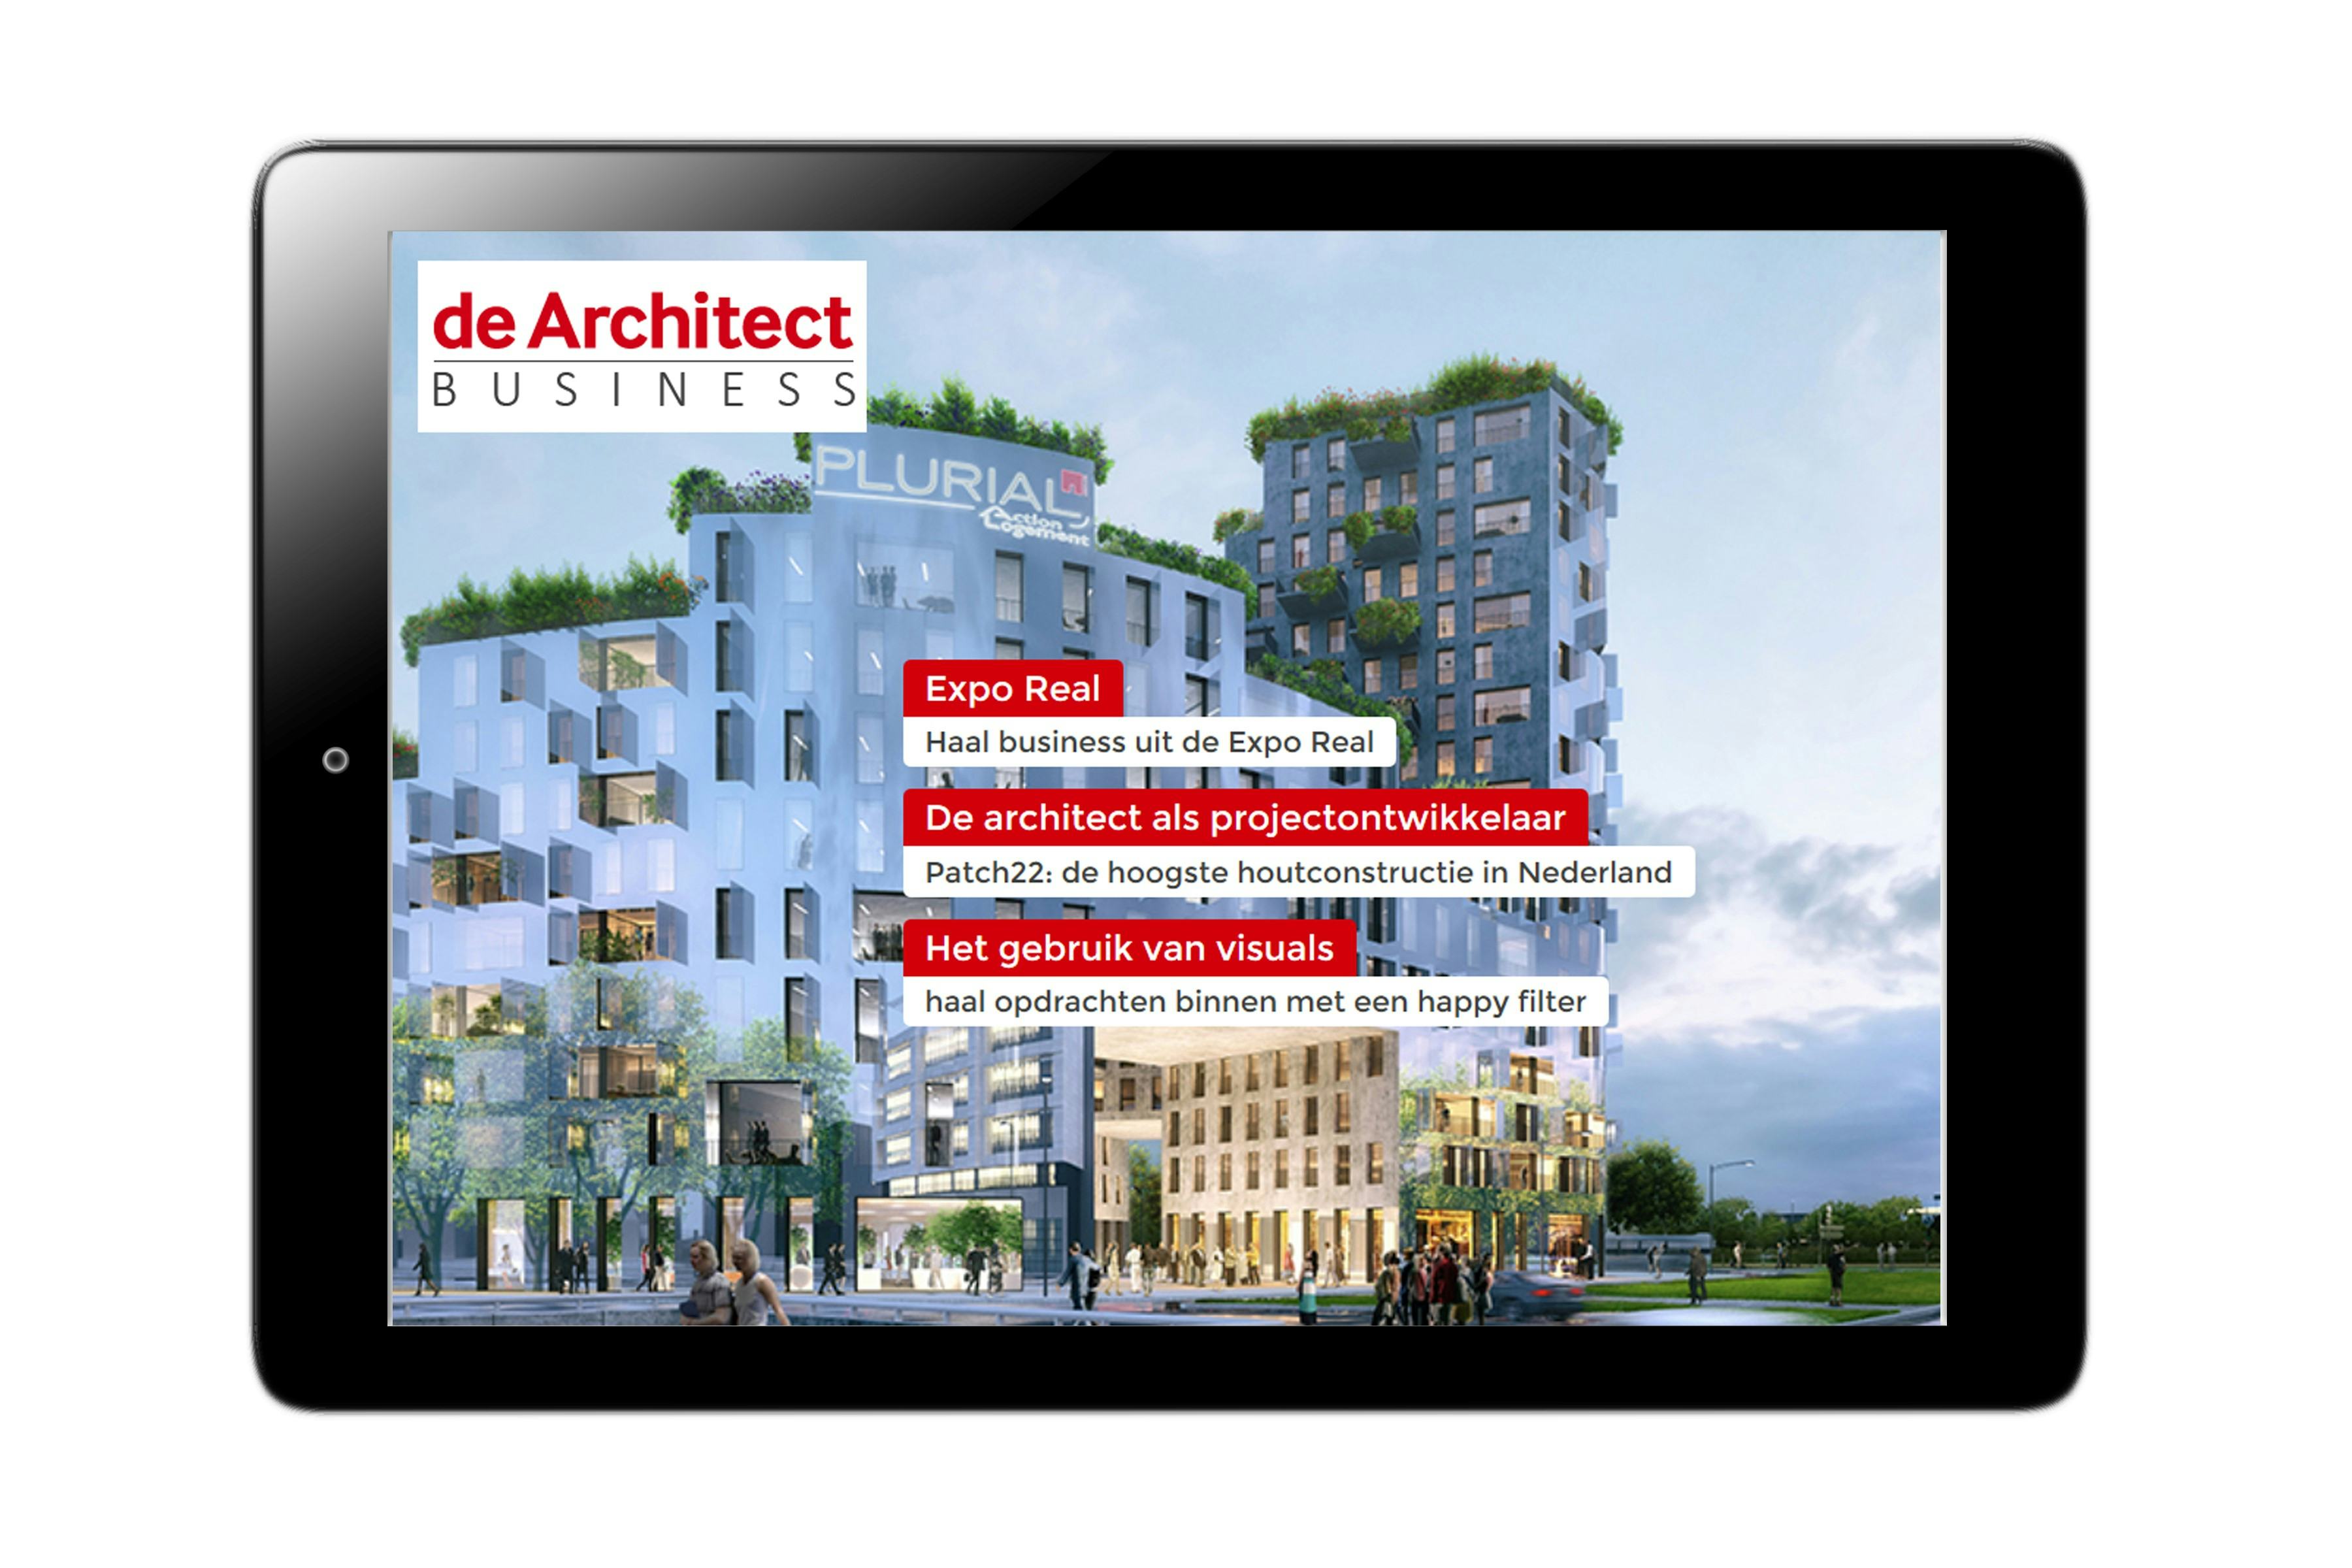 de Architect Business digimagazine uit